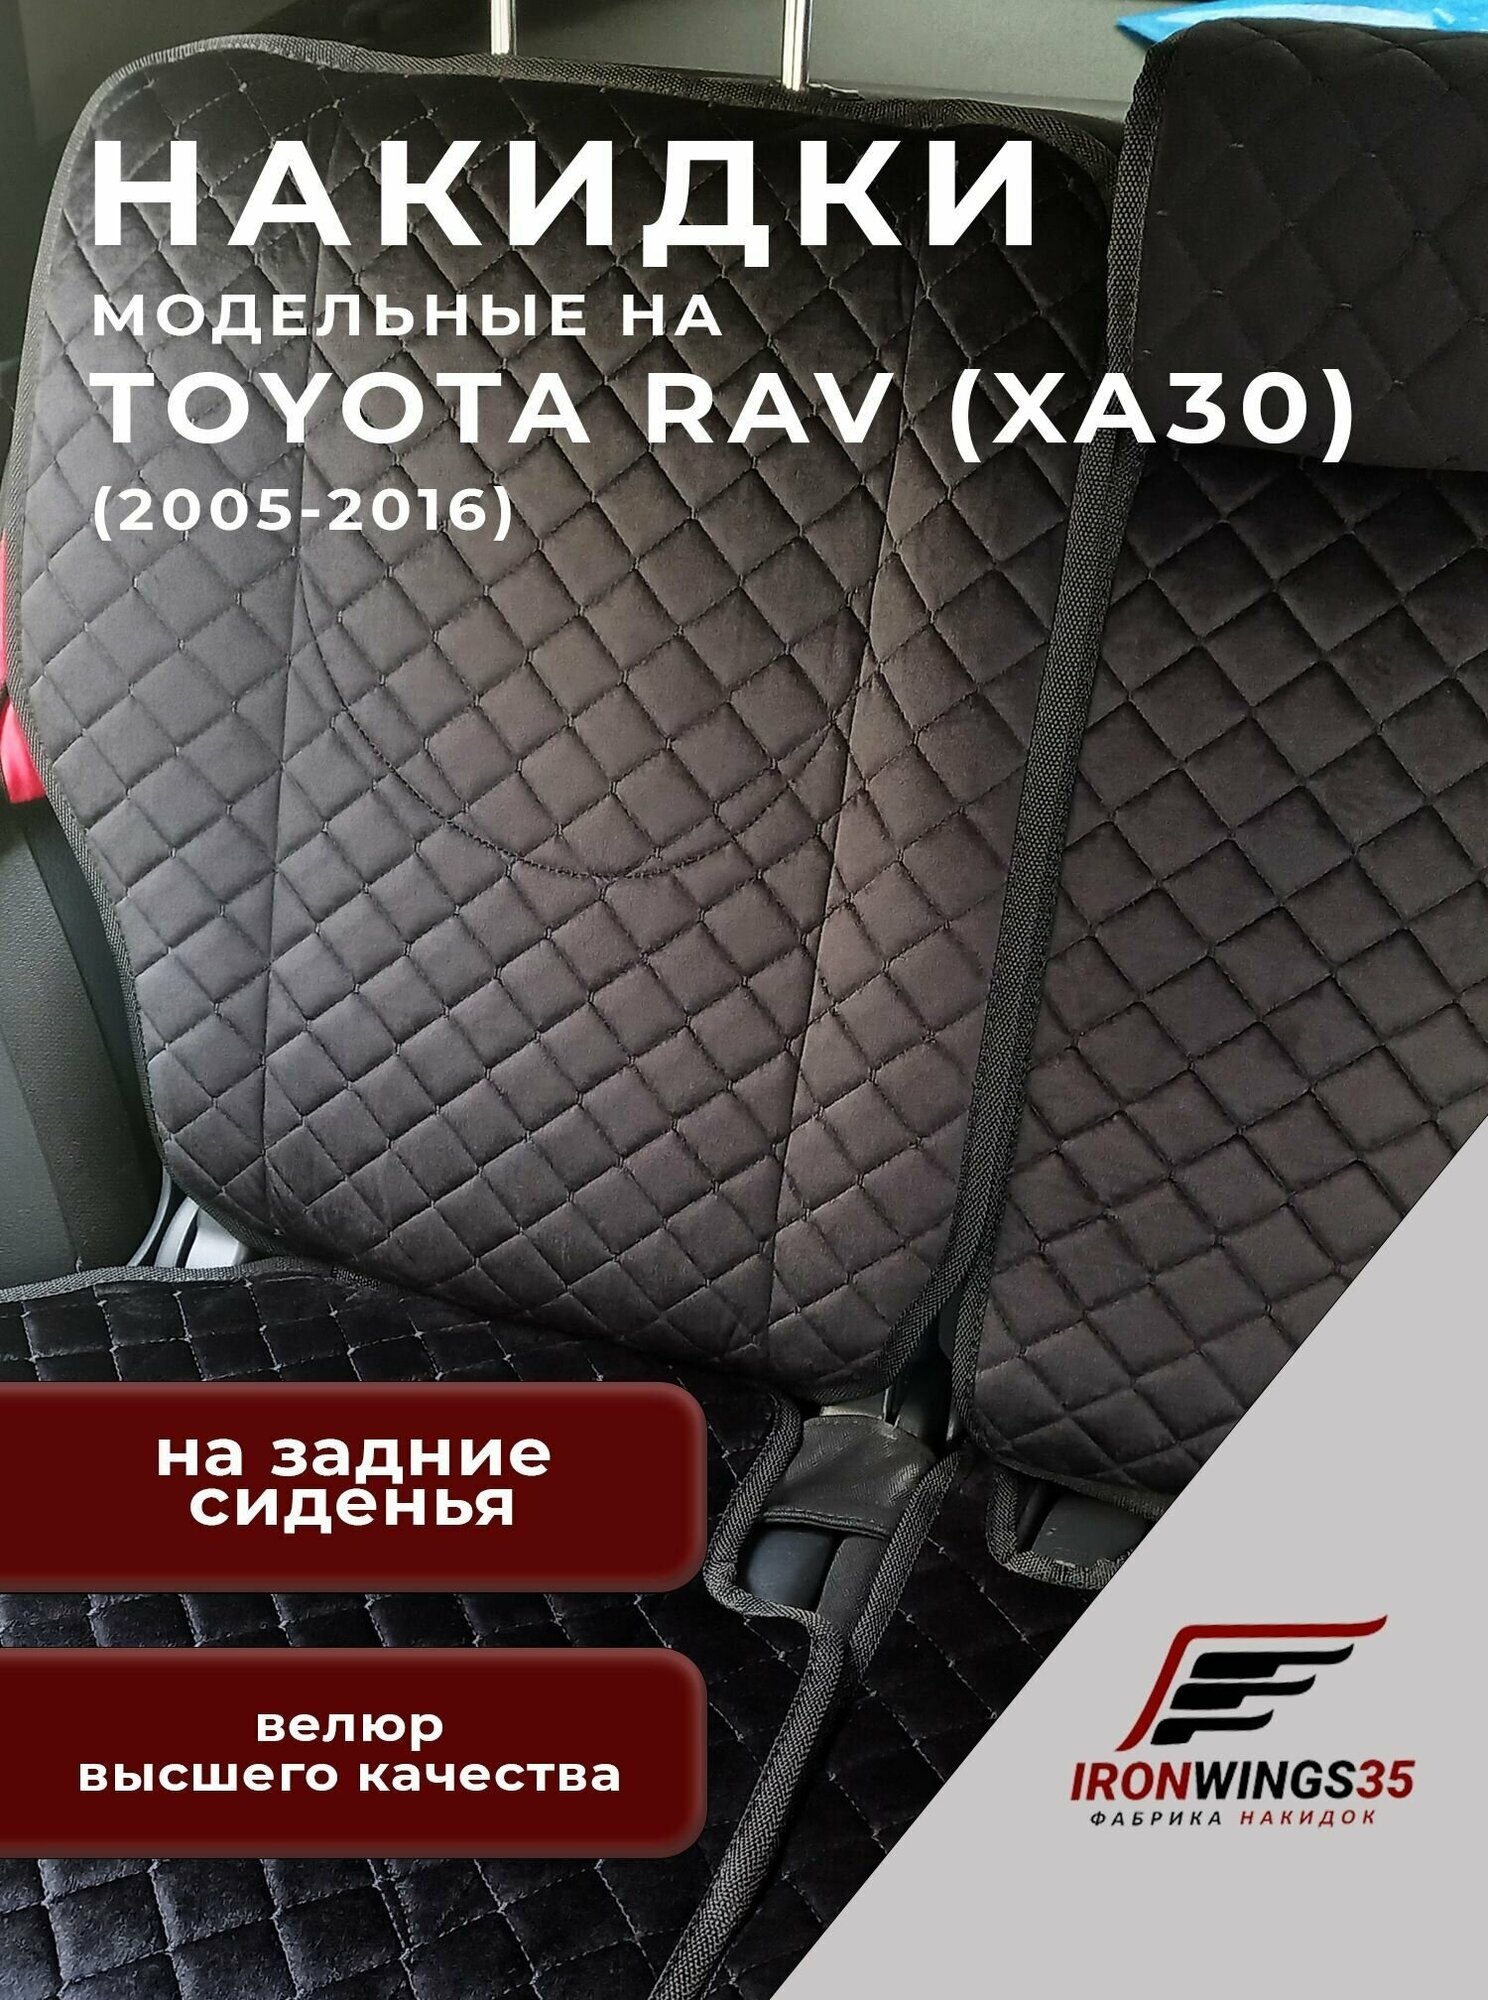 Накидки на задние сиденья автомобиля TOYOTA RAV4 (XA30) из велюра в ромбик